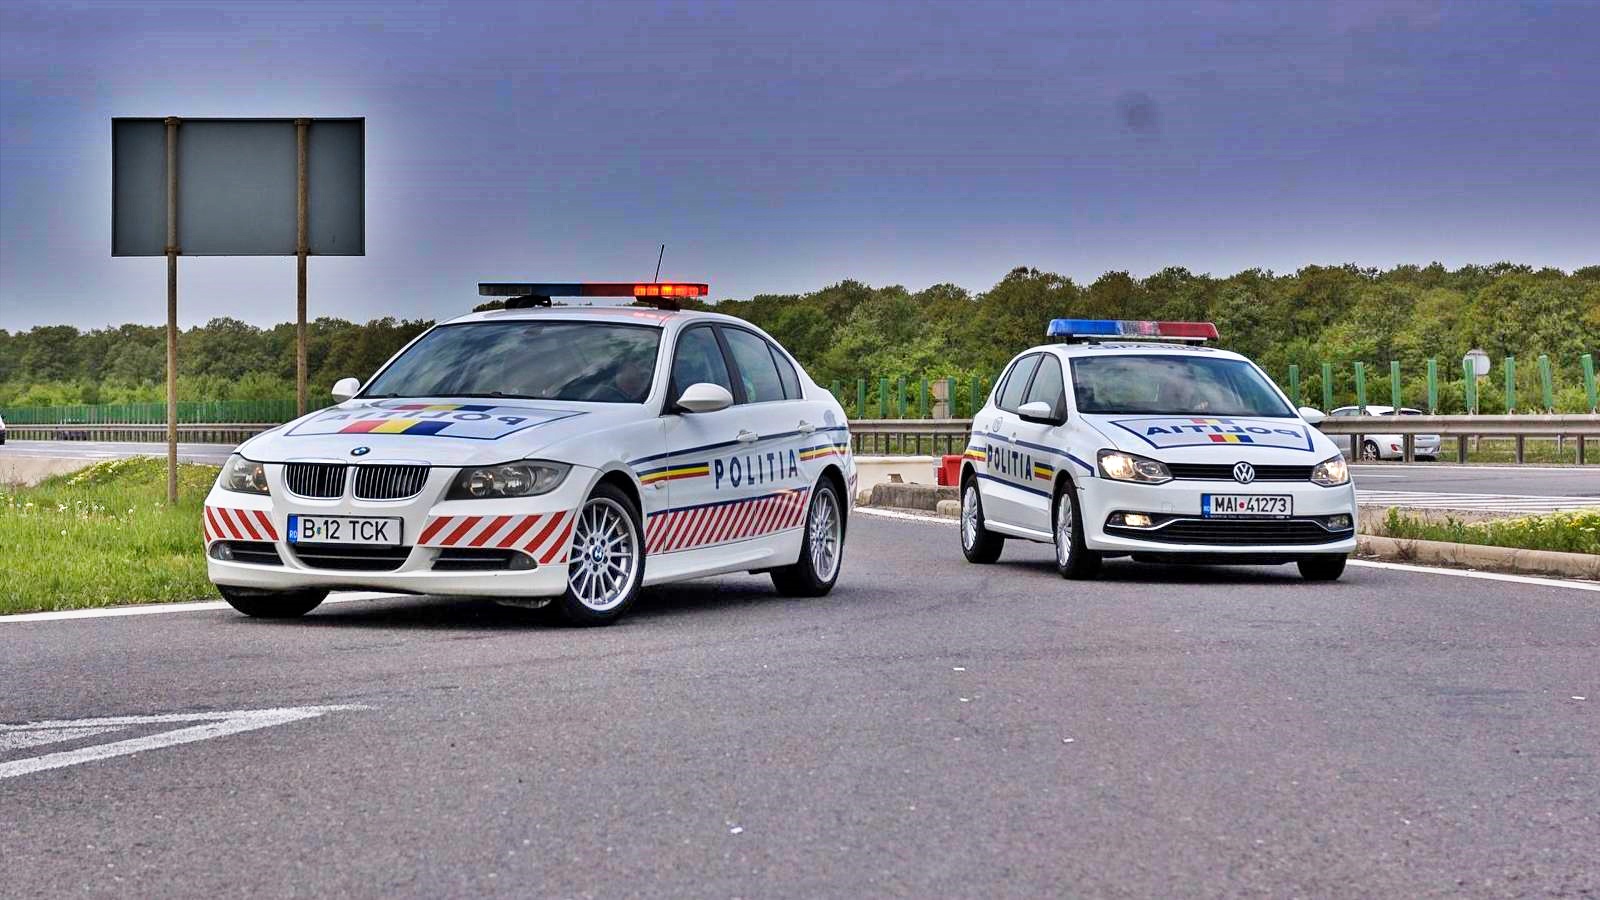 Romanian poliisi pitää etäisyyttä